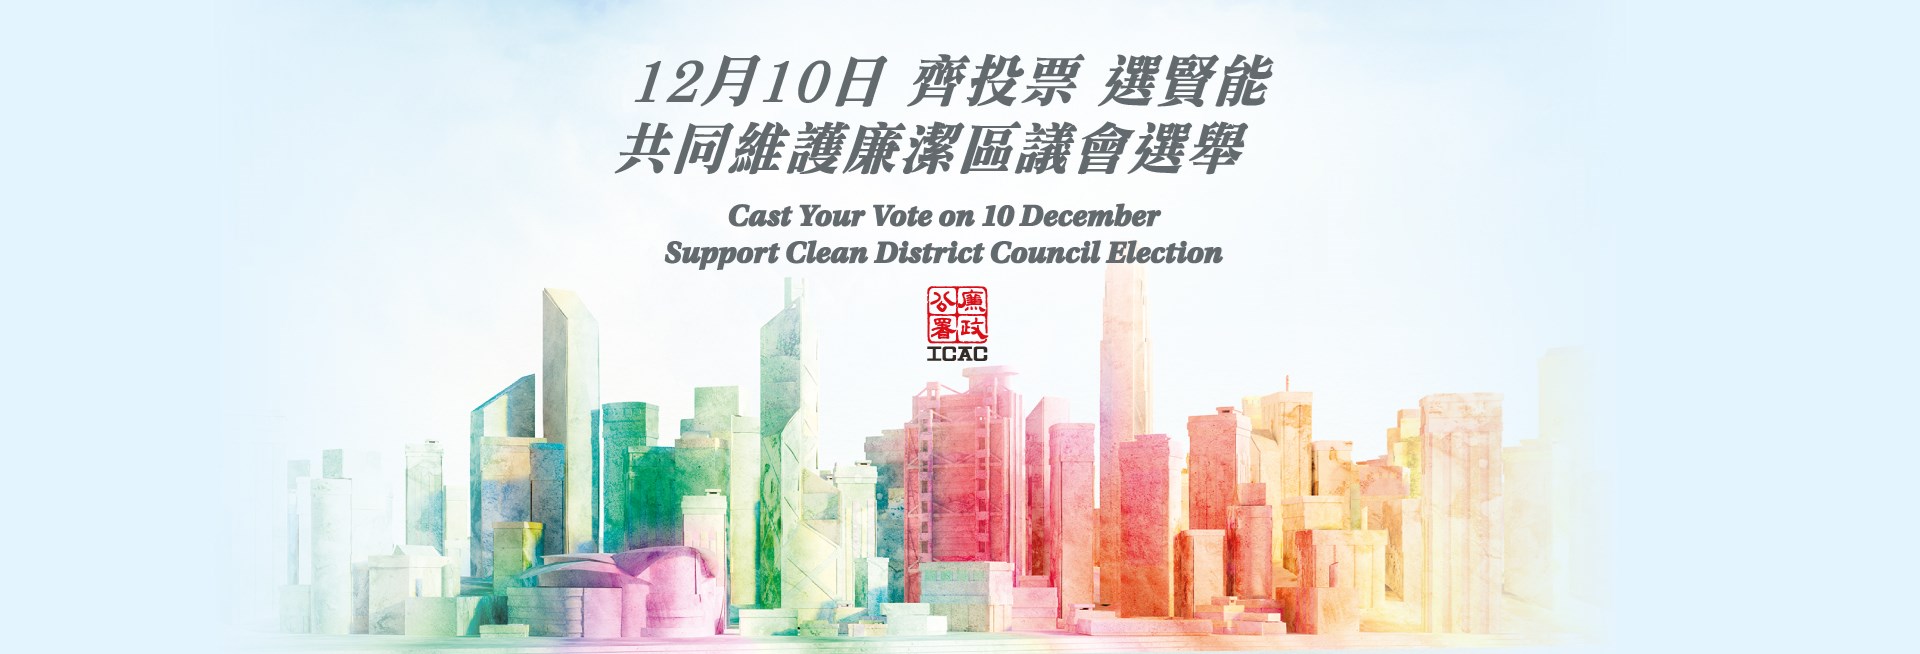 12月10日 齊投票 選賢能